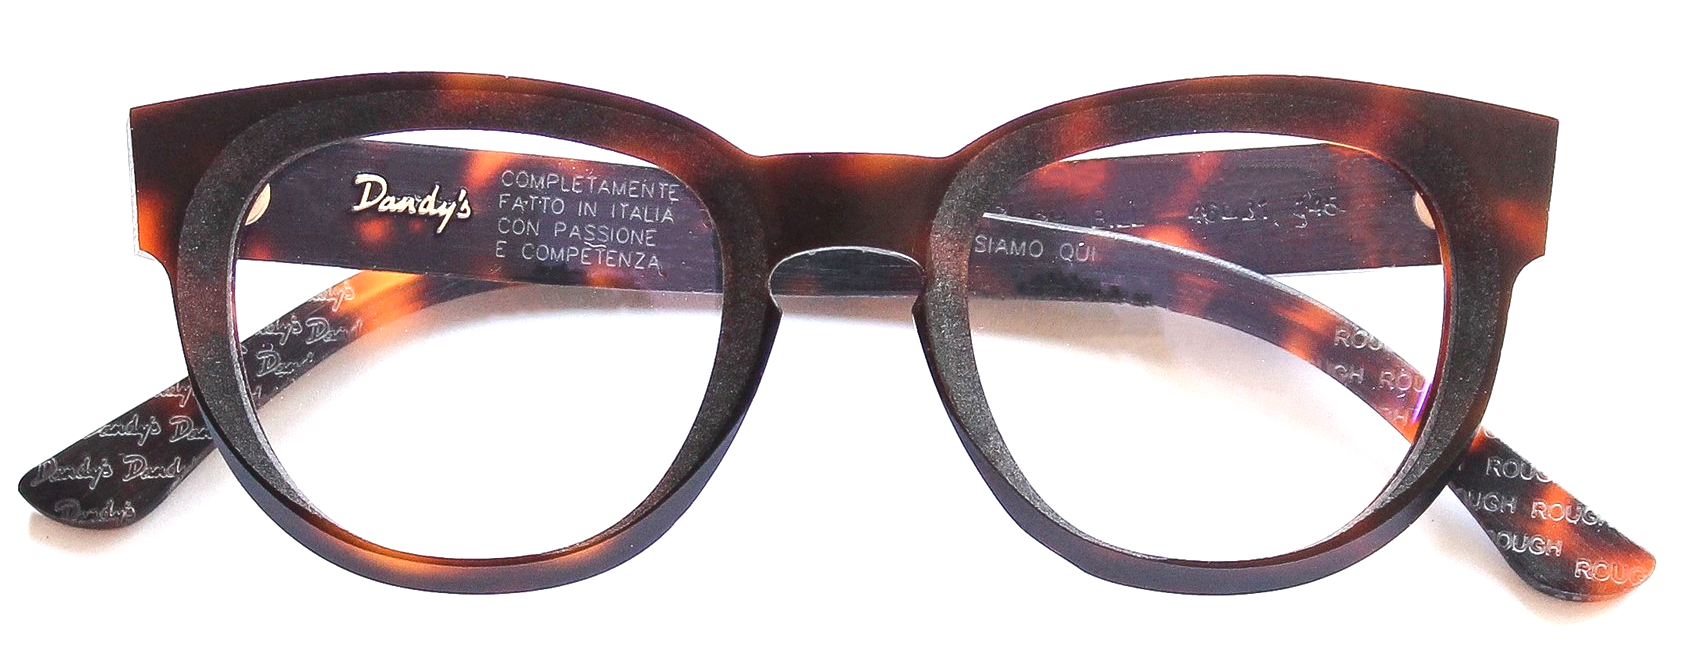 Dandy's glasses frame